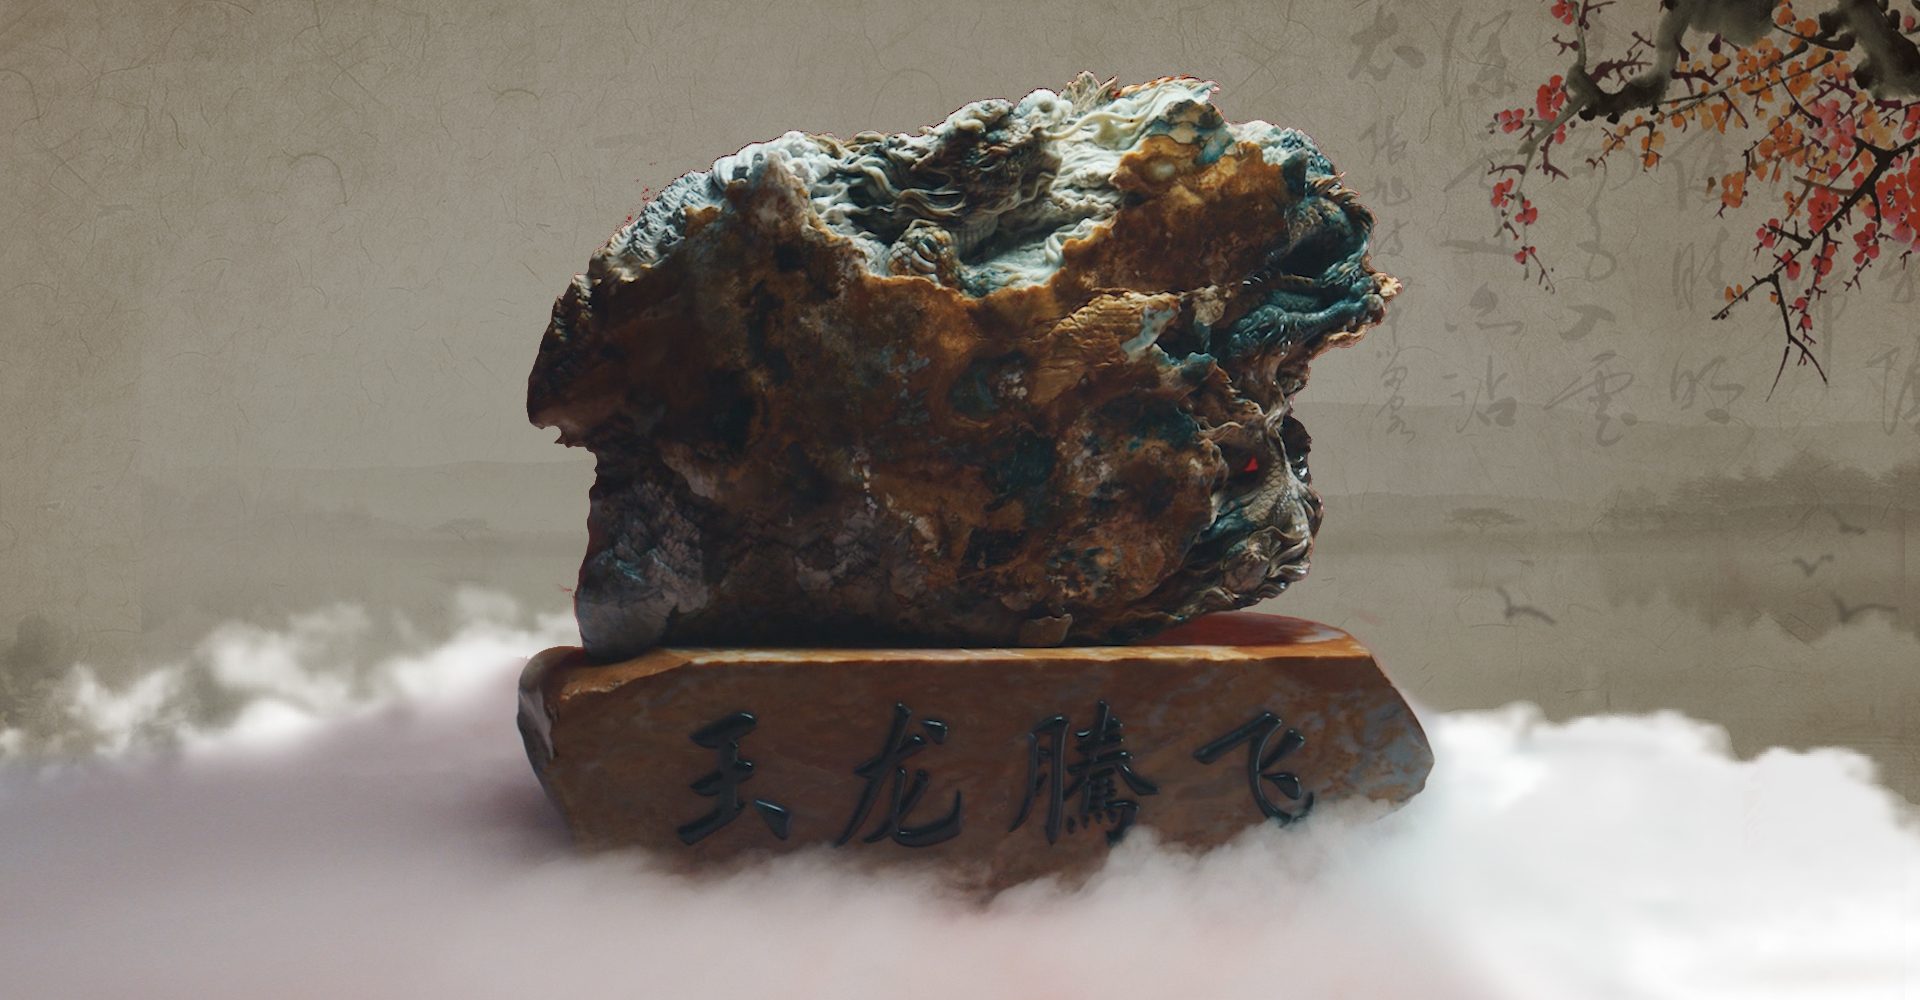 Les artisans de Hongshan se consacrent à la sculpture de Jade